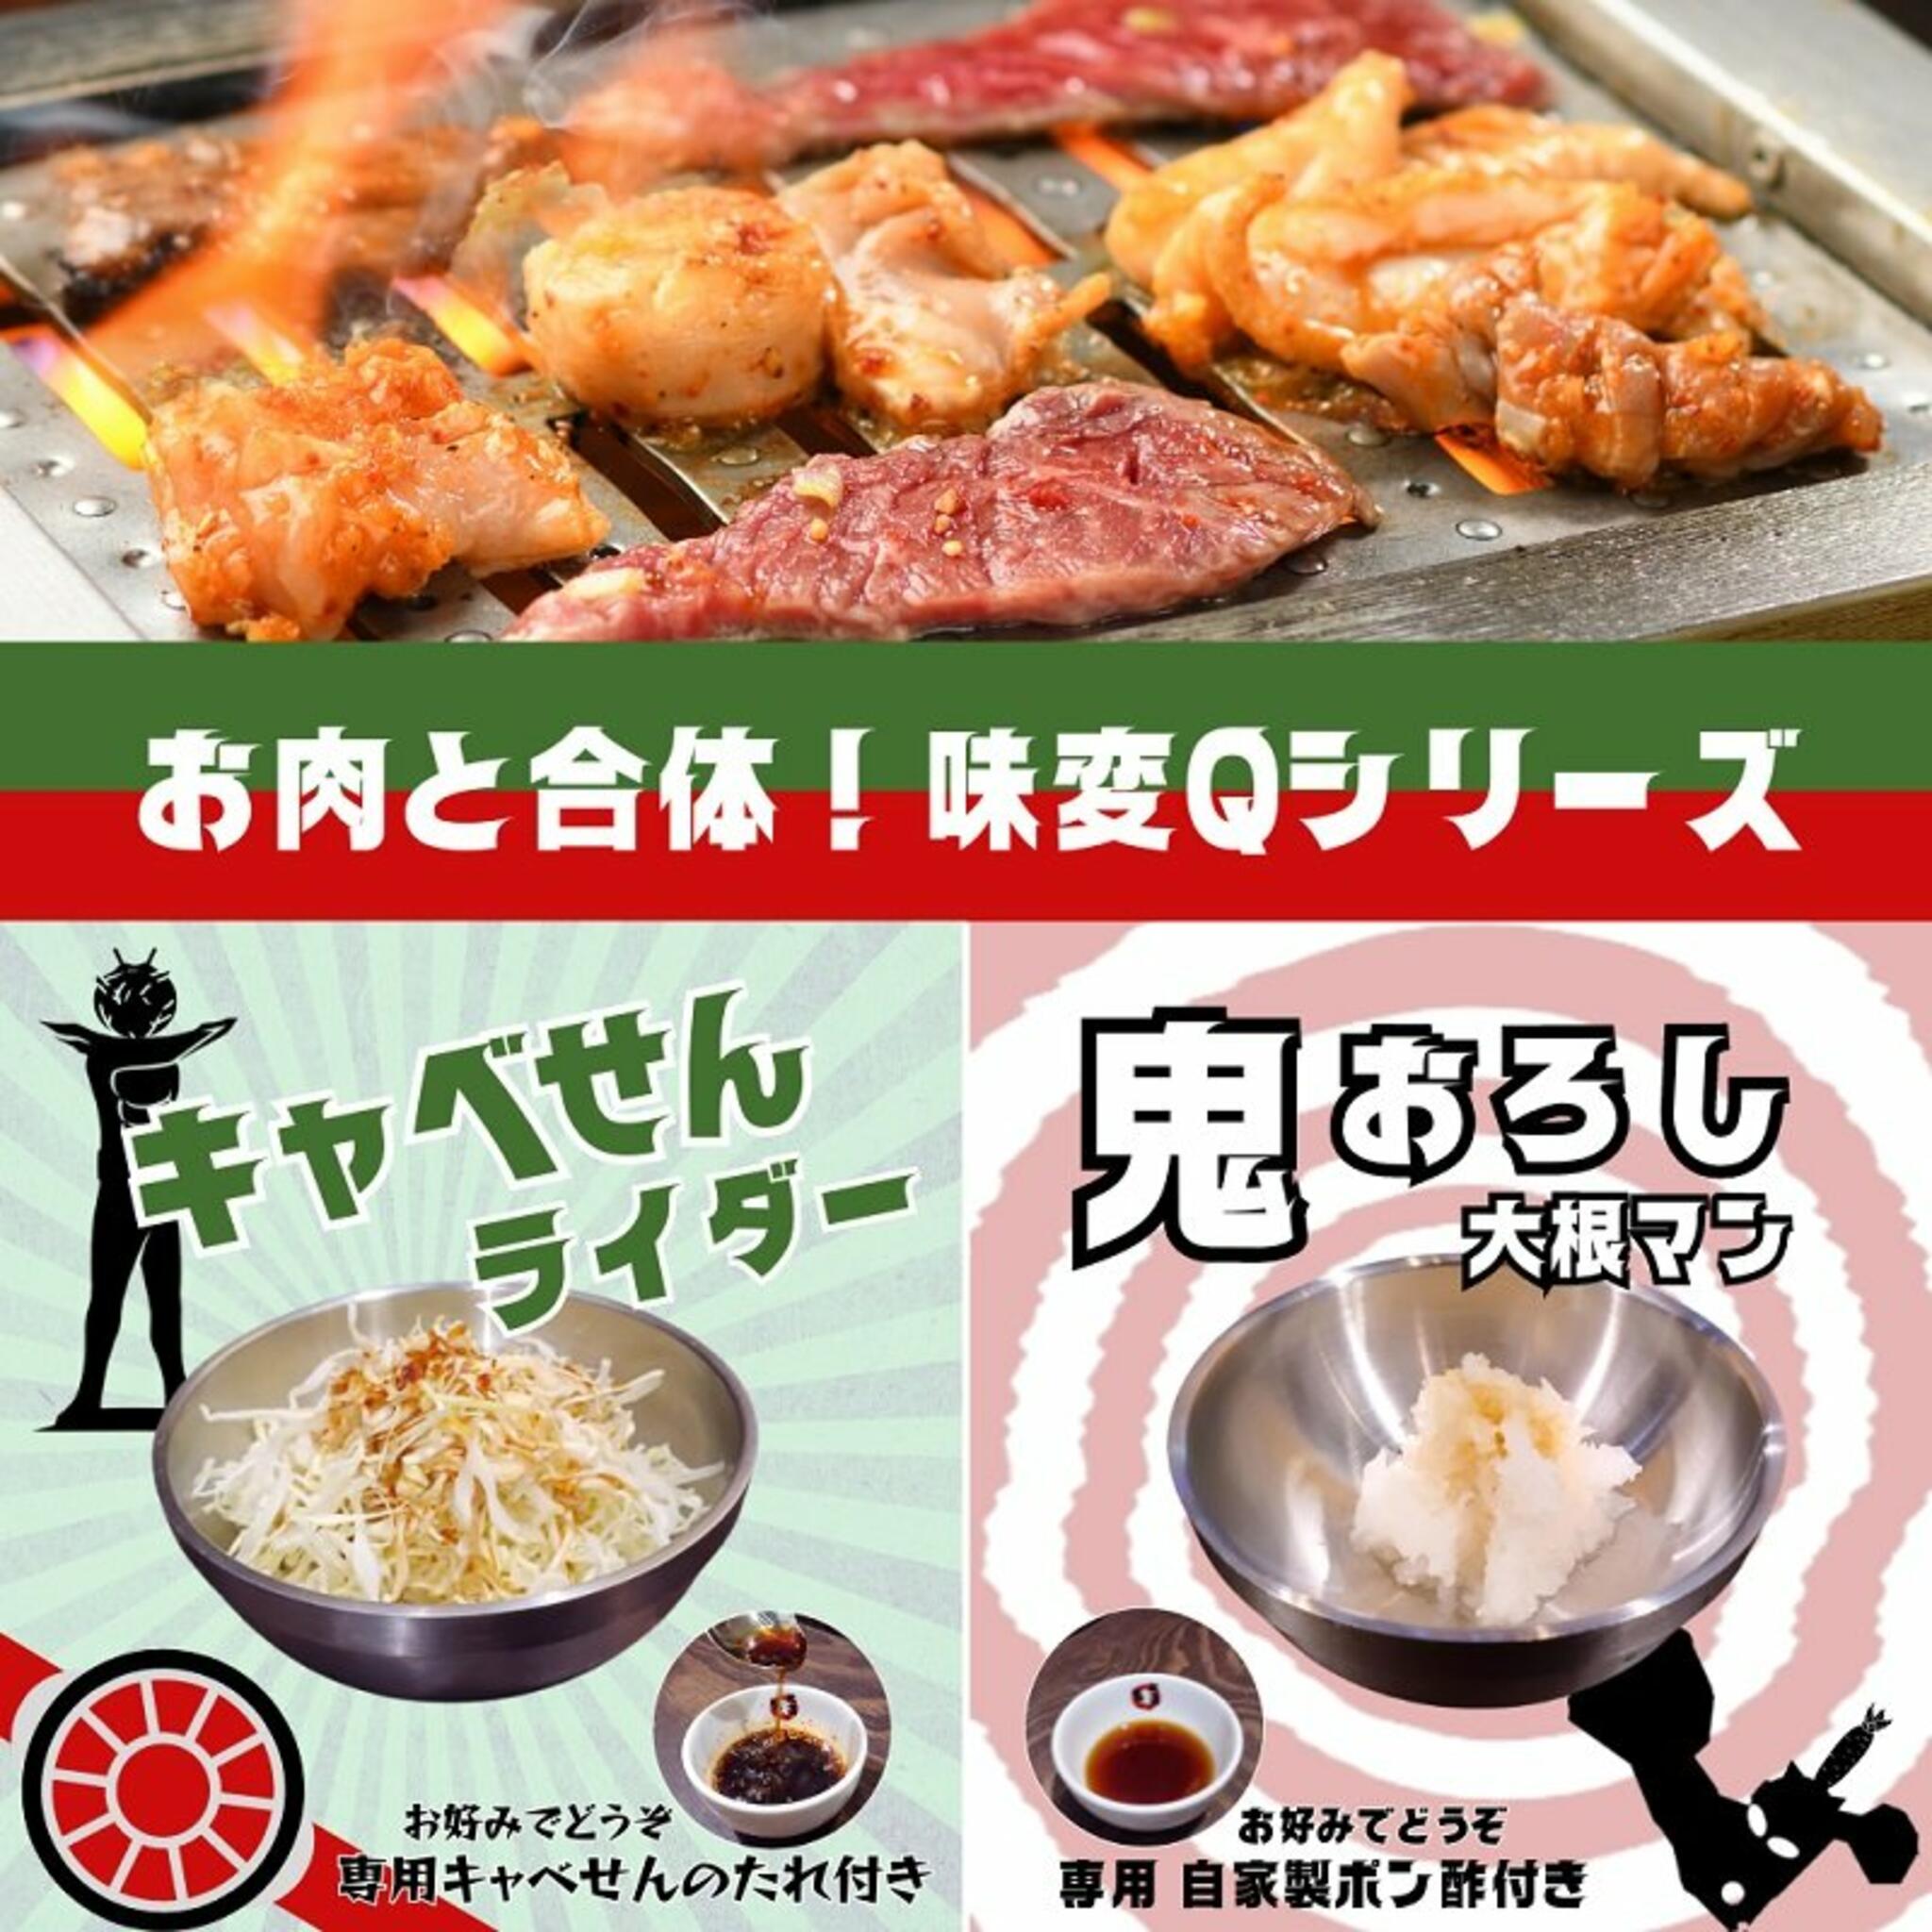 ホルモン食堂食樂 国分町店からのお知らせ(【味変Qシリーズ】)に関する写真